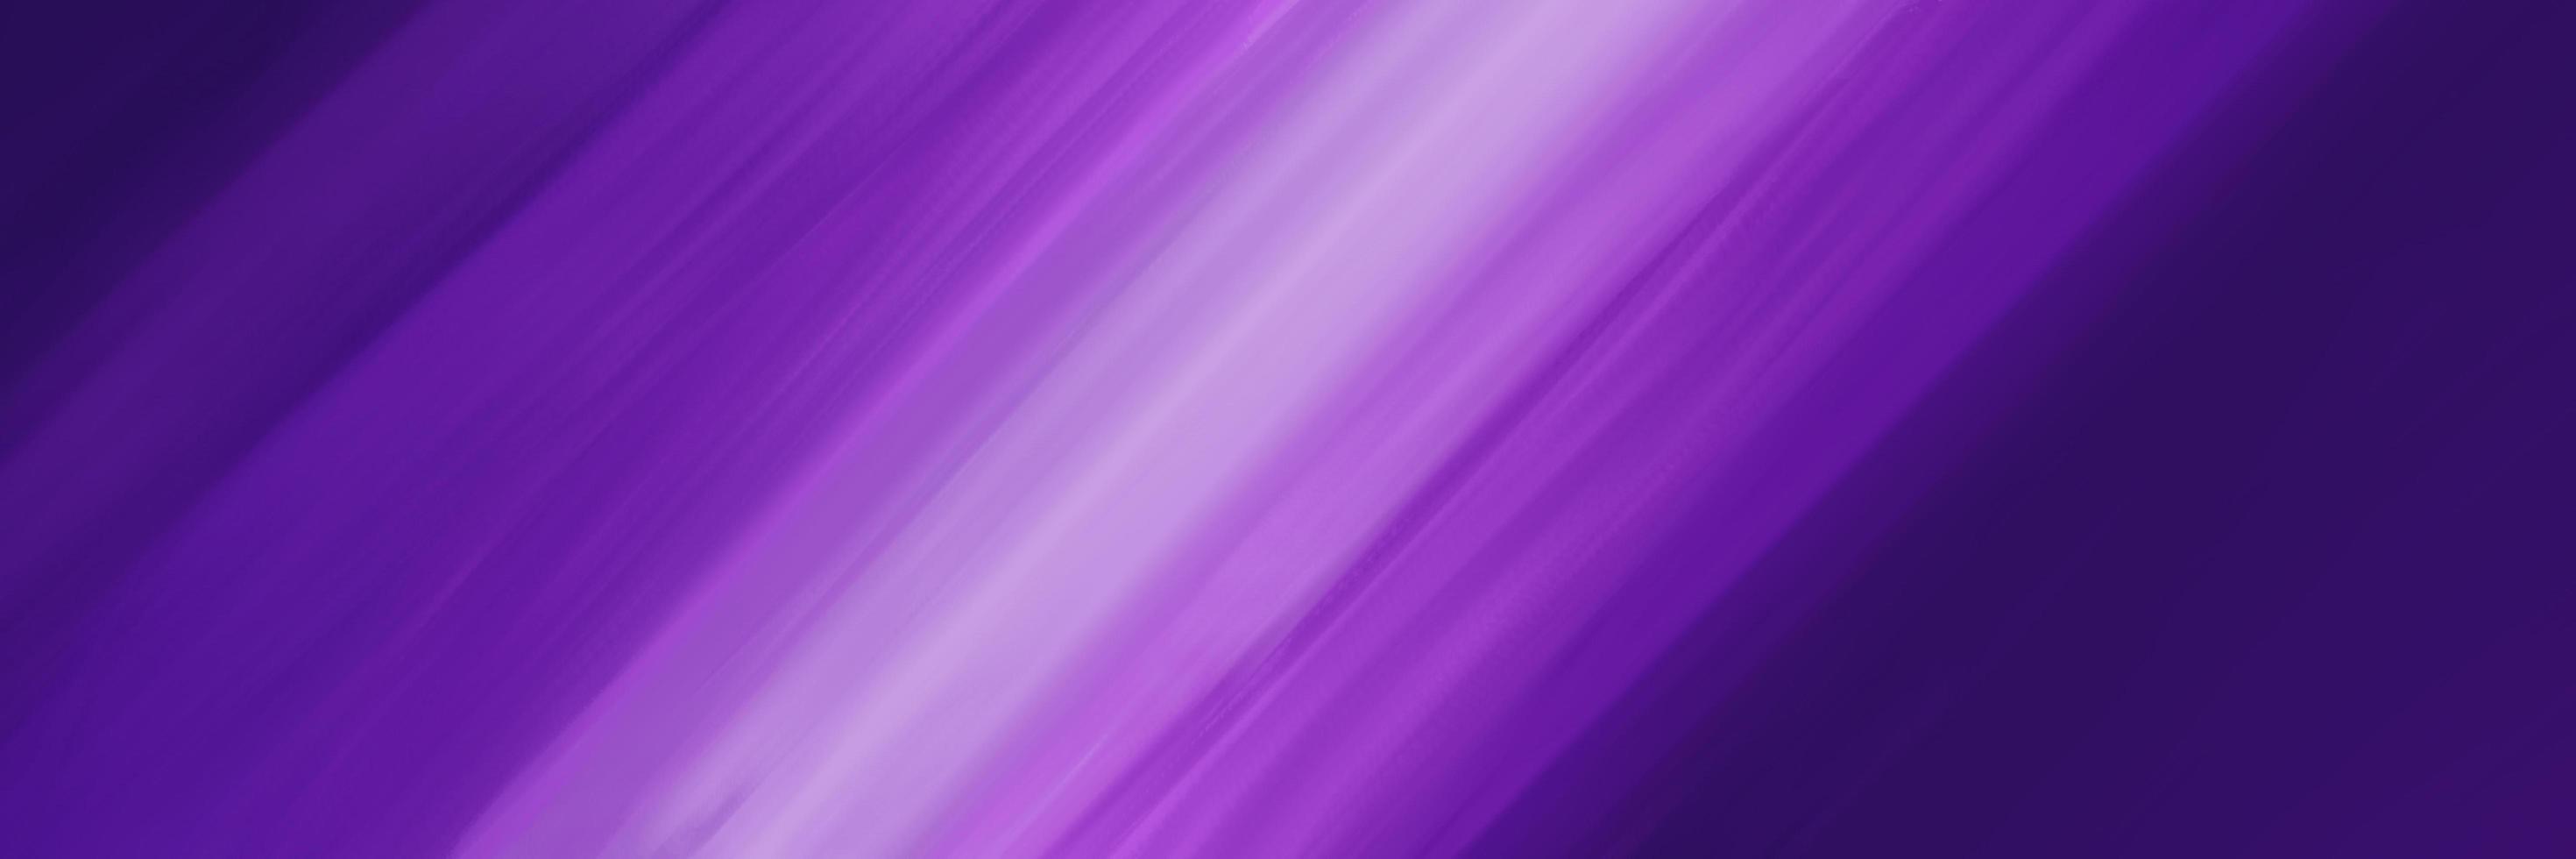 abstrait ligne floue lisse dans des tons de couleur pastel violet photo